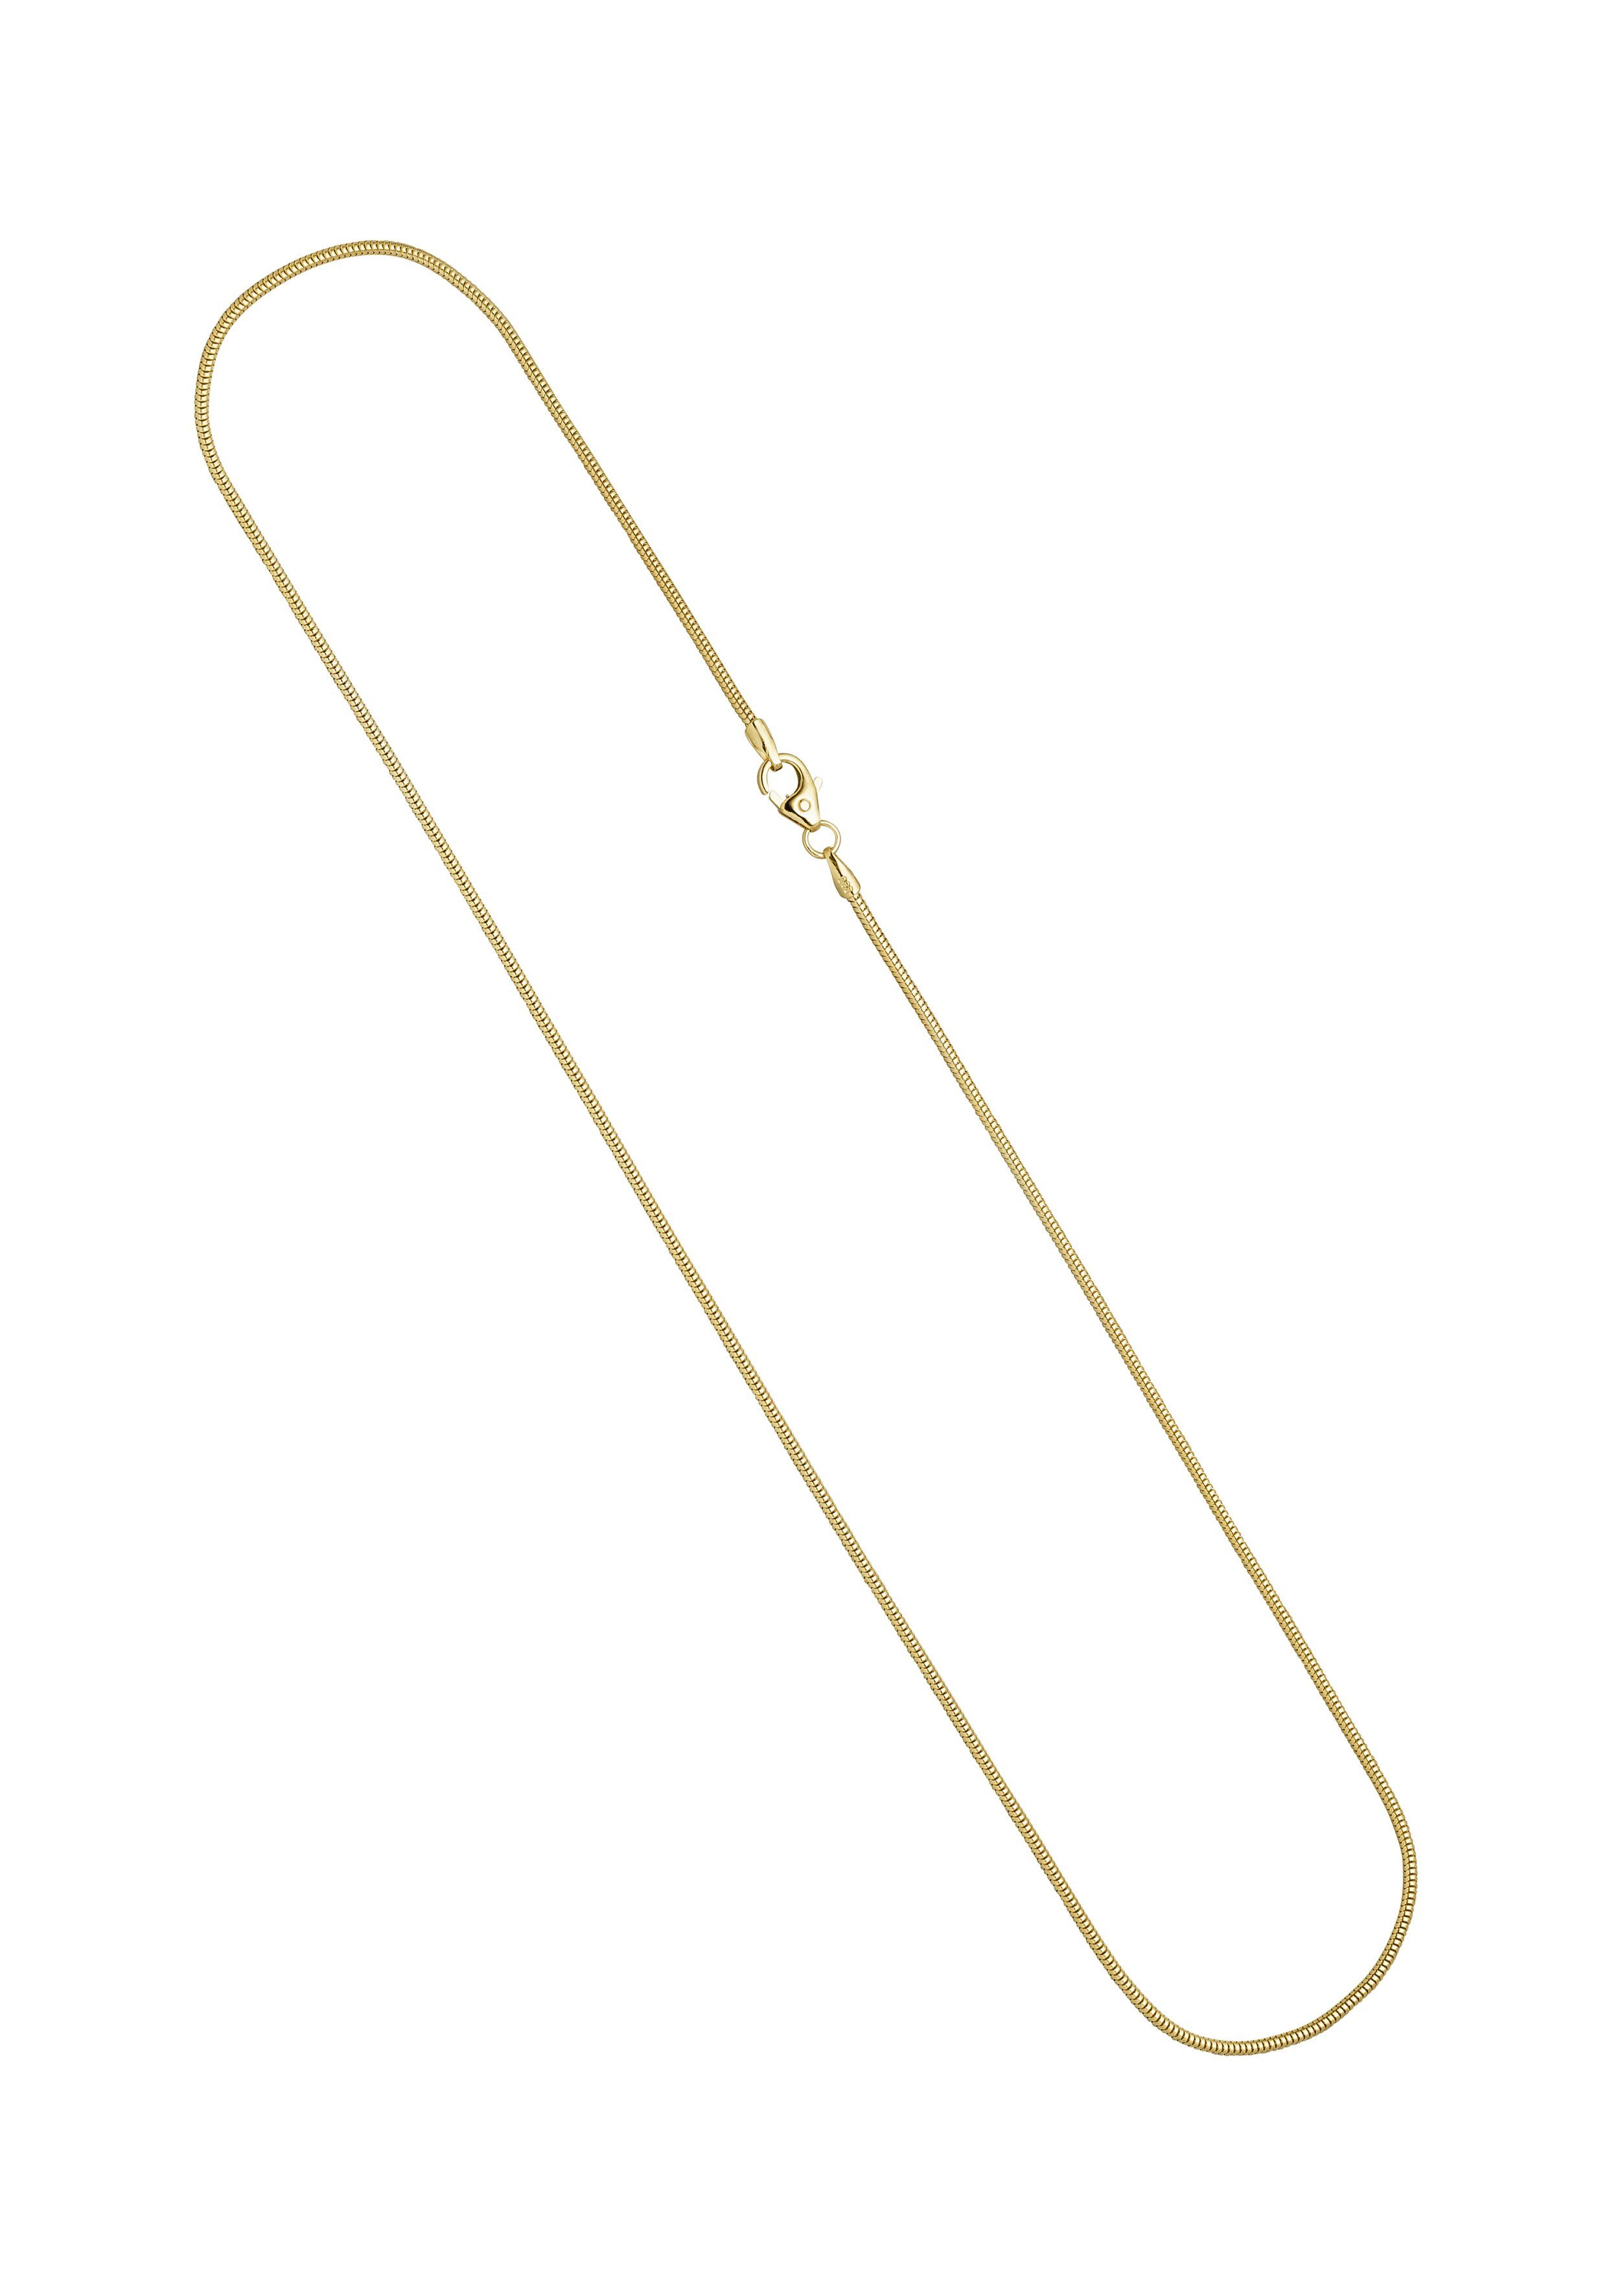 JOBO Goldkette Schlangenkette, 585 Gold 40 cm 1,4 mm